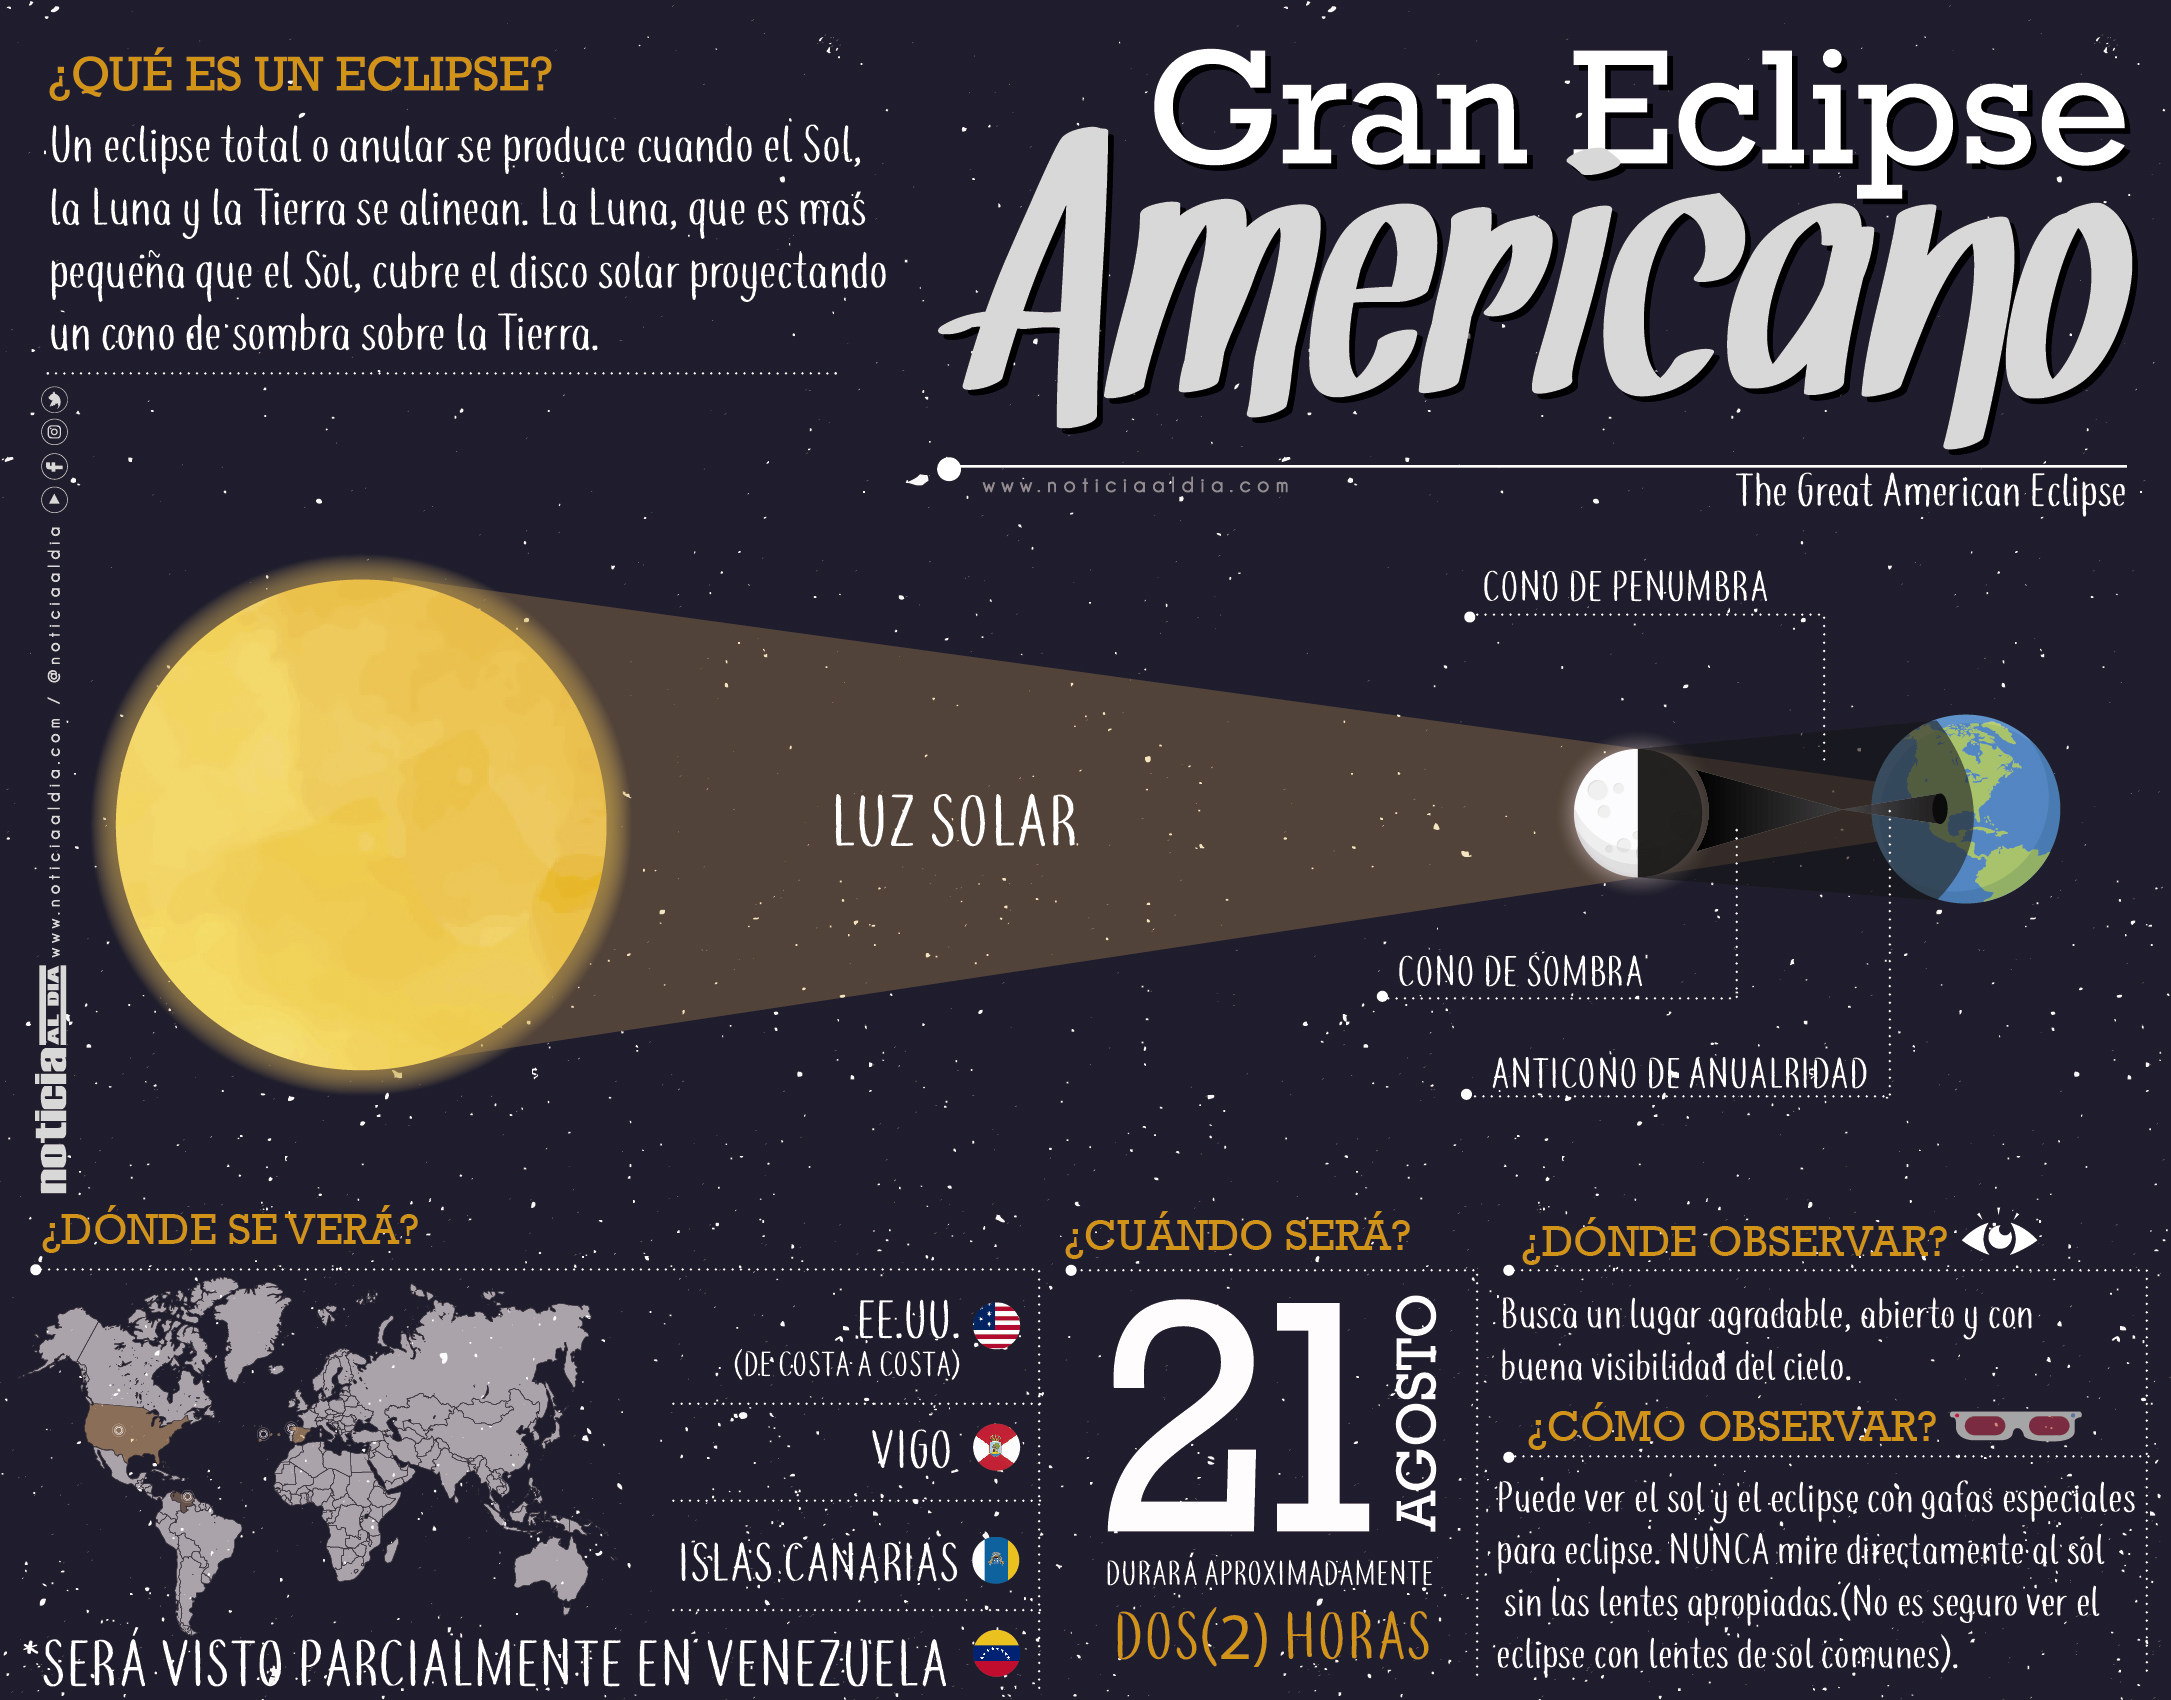 Gran eclipse americano